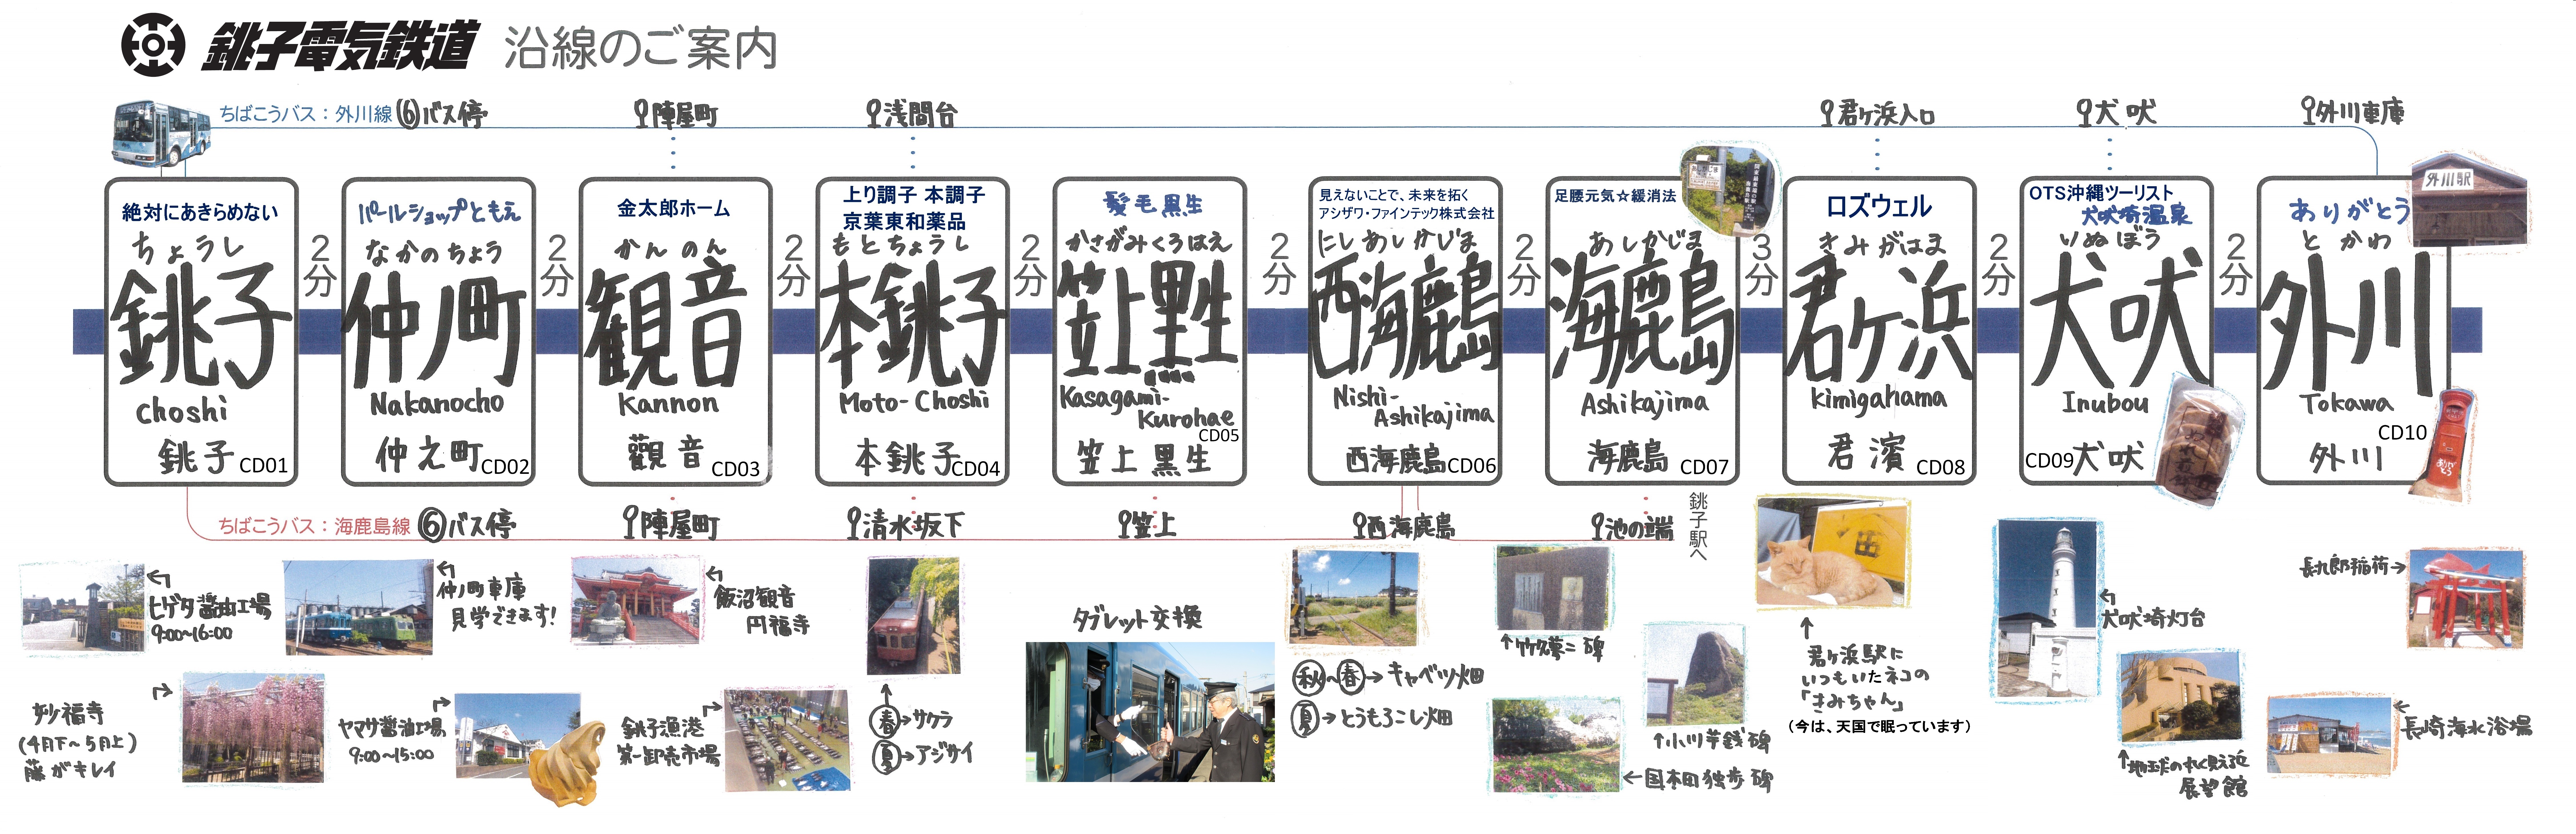 時刻表 銚子電気鉄道株式会社